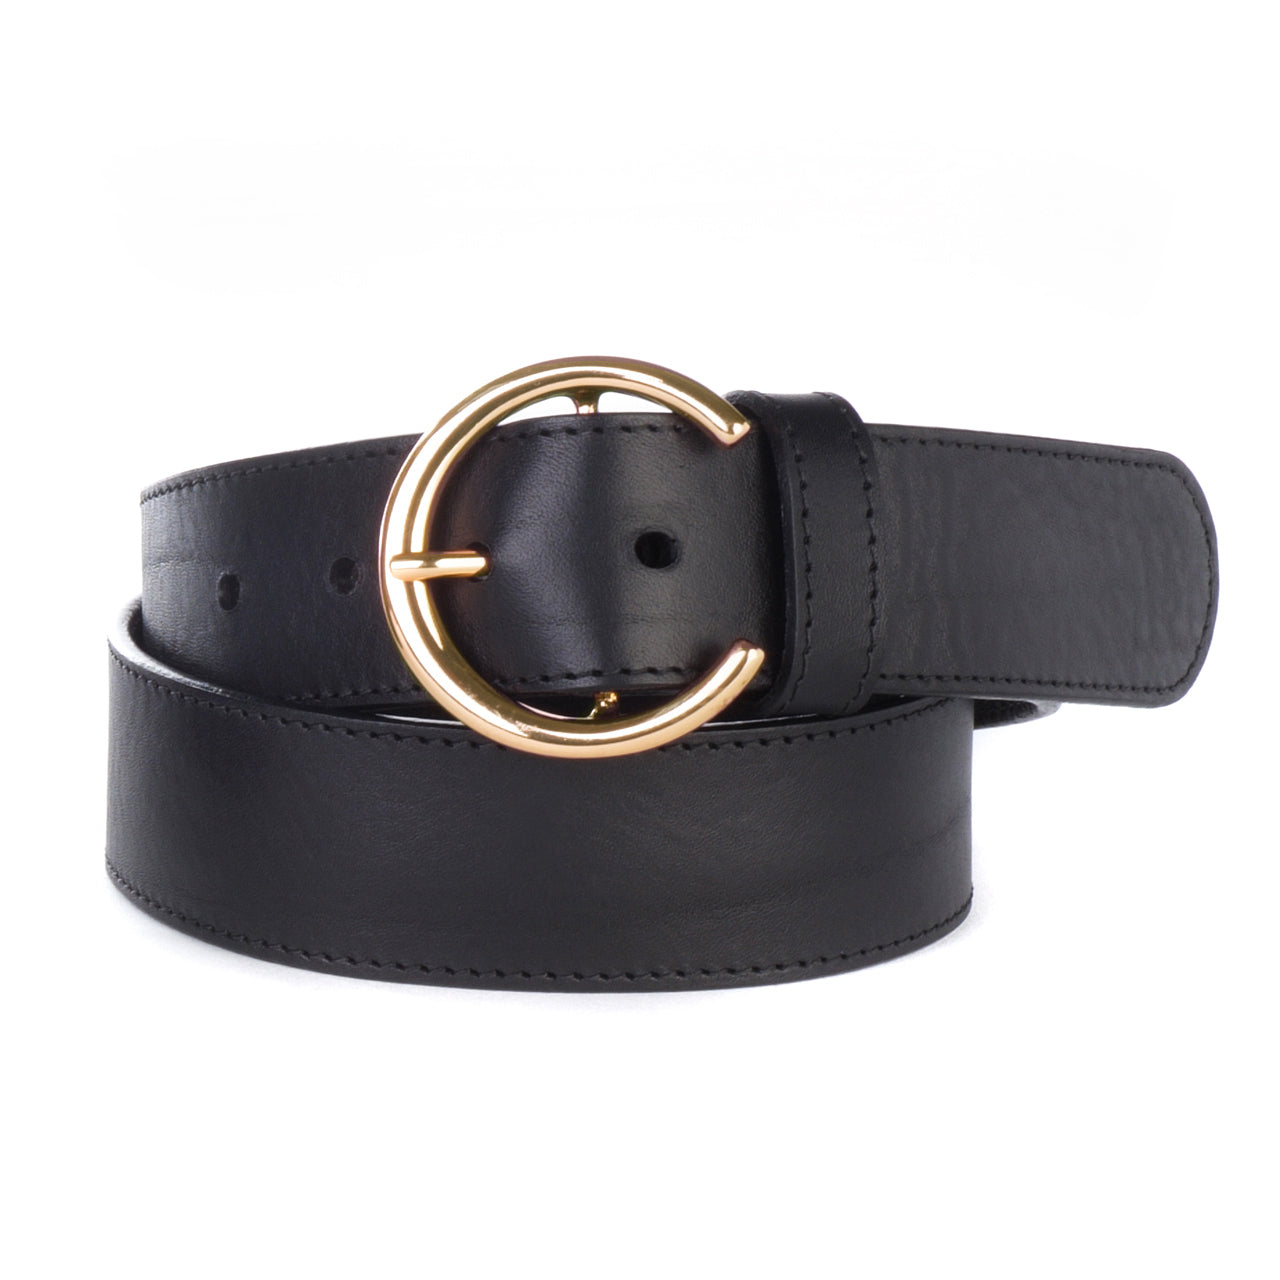 BRAVE Caprina Leather Belt - Black & Gold